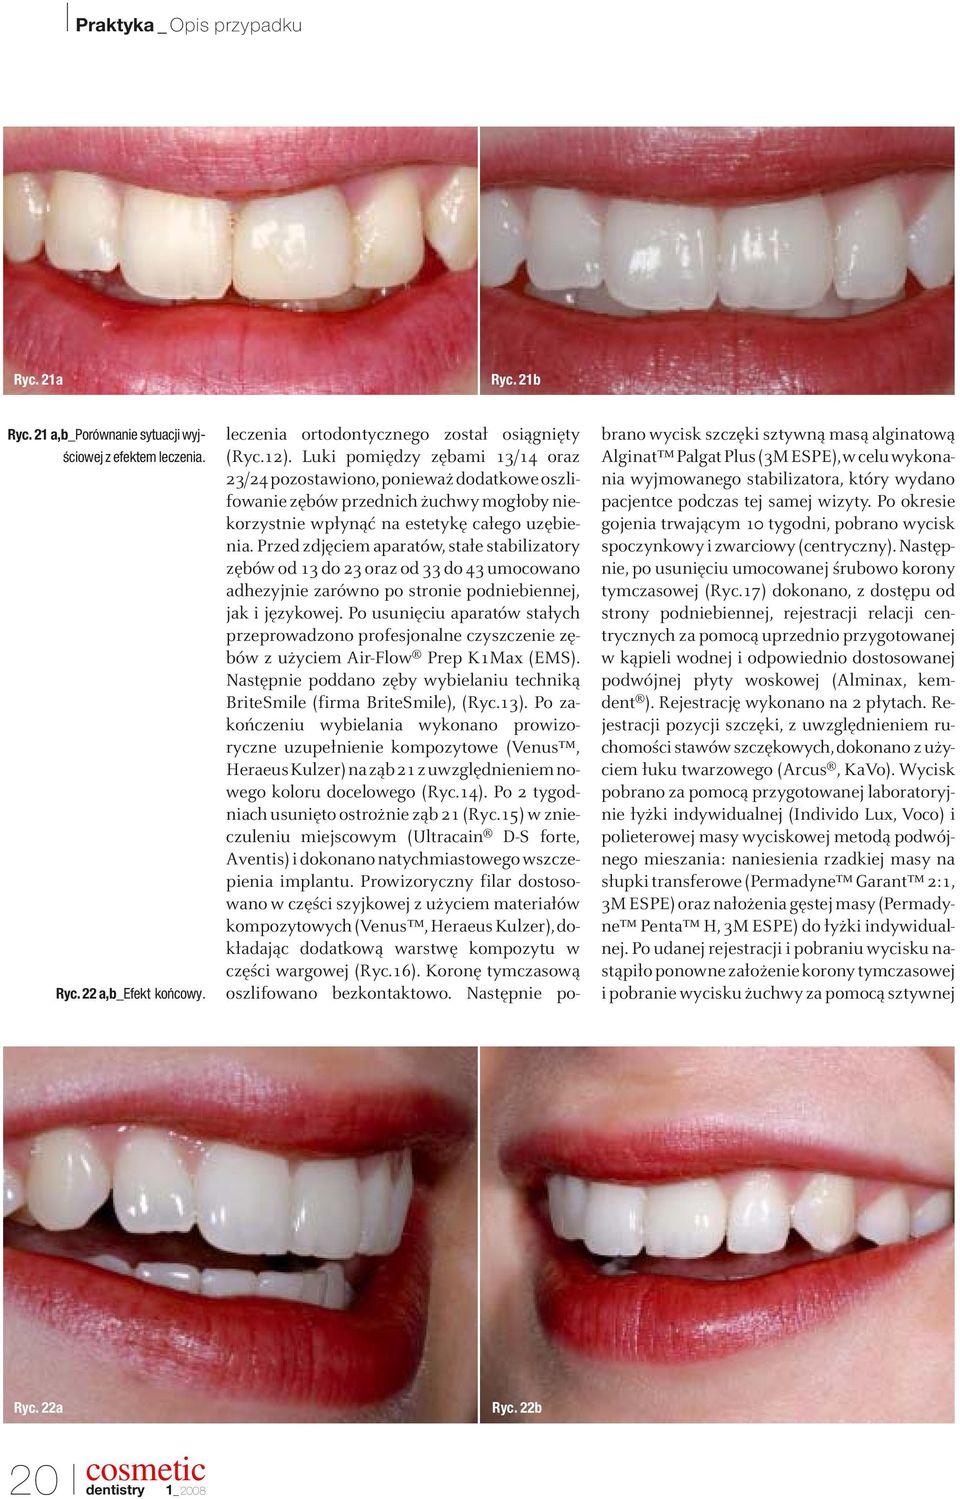 Przed zdjęciem aparatów, stałe stabilizatory zębów od 13 do 23 oraz od 33 do 43 umocowano adhezyjnie zarówno po stronie podniebiennej, jak i językowej.